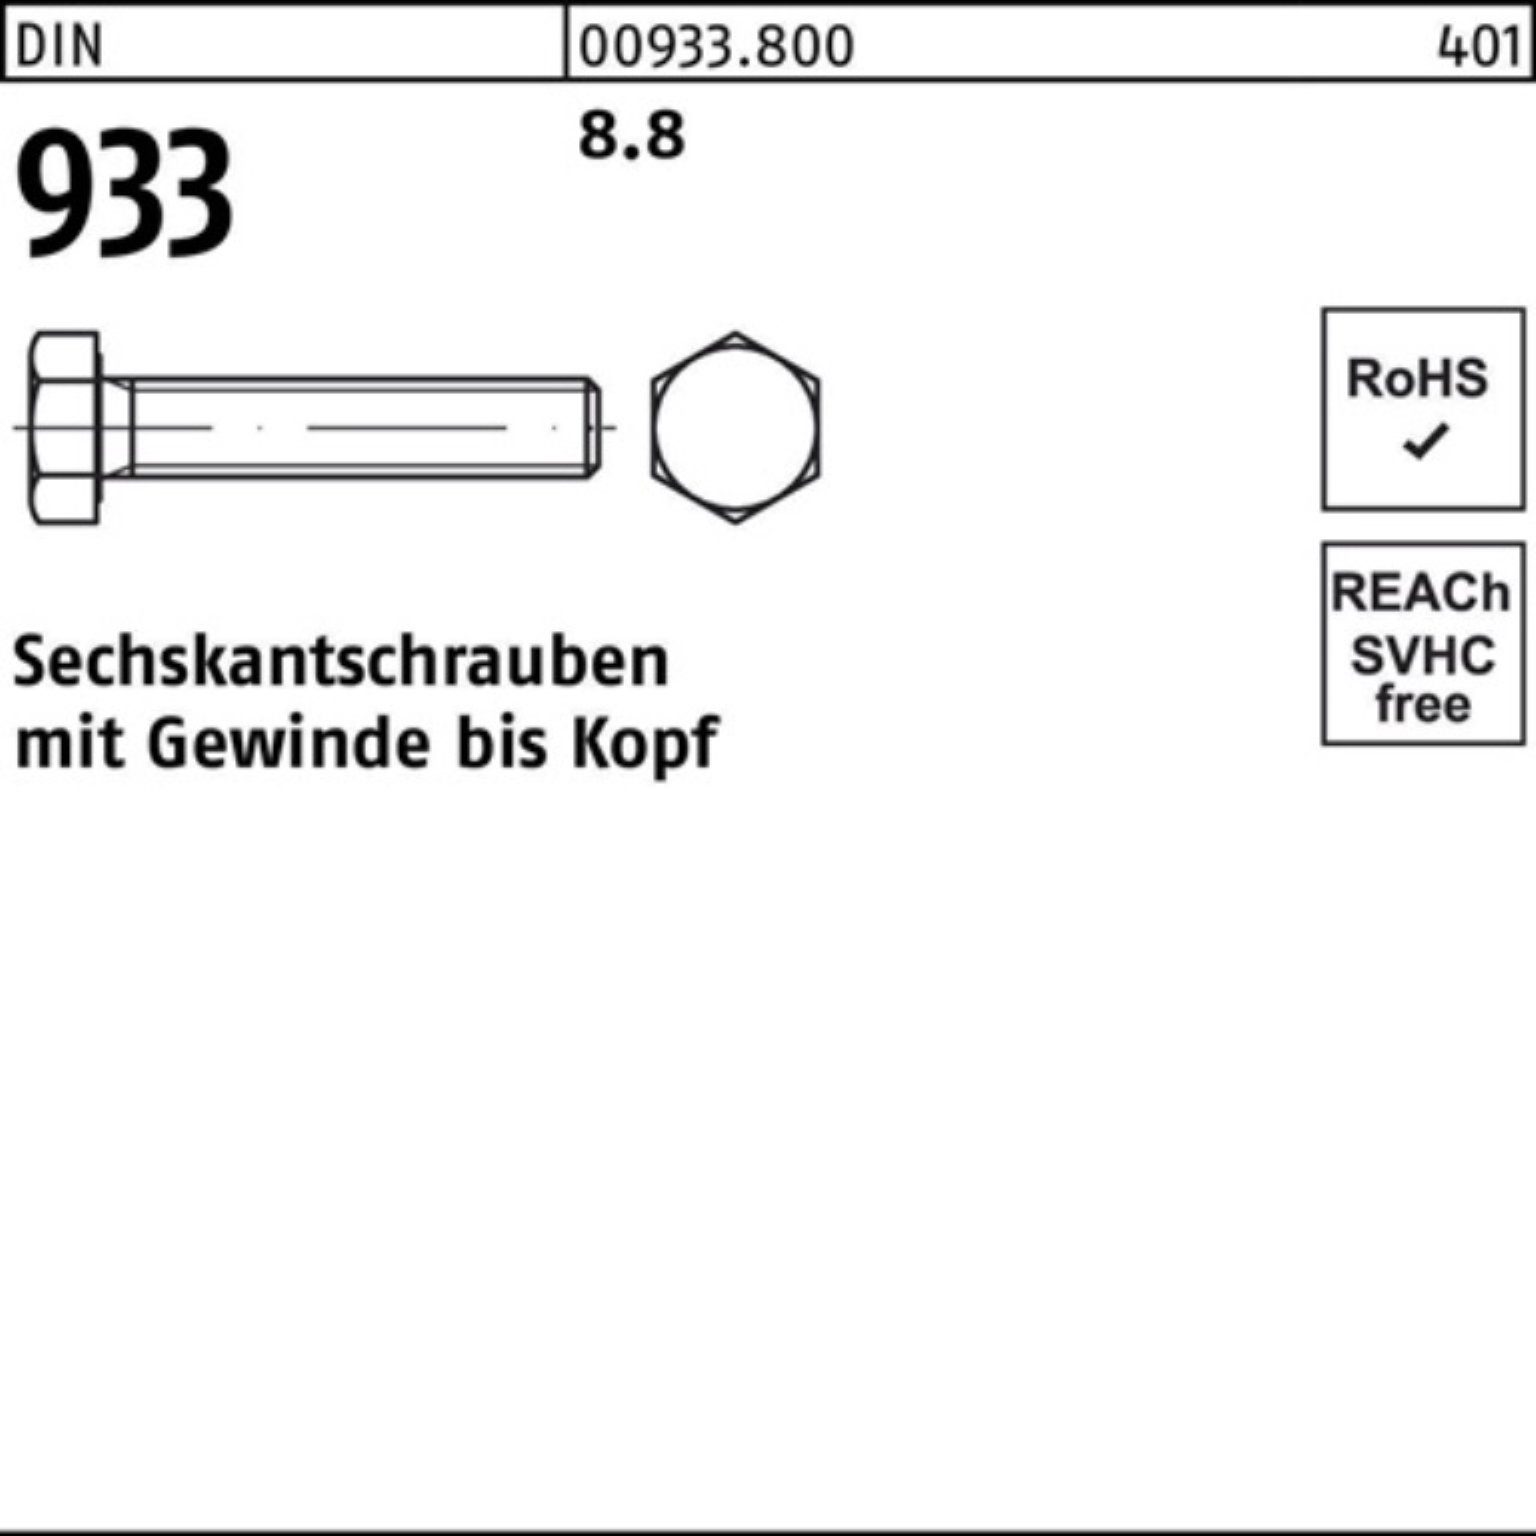 933 DIN DIN 110 Sechskantschraube Reyher M30x 8.8 1 Stück Pack 100er 933 Sechskantschraube VG